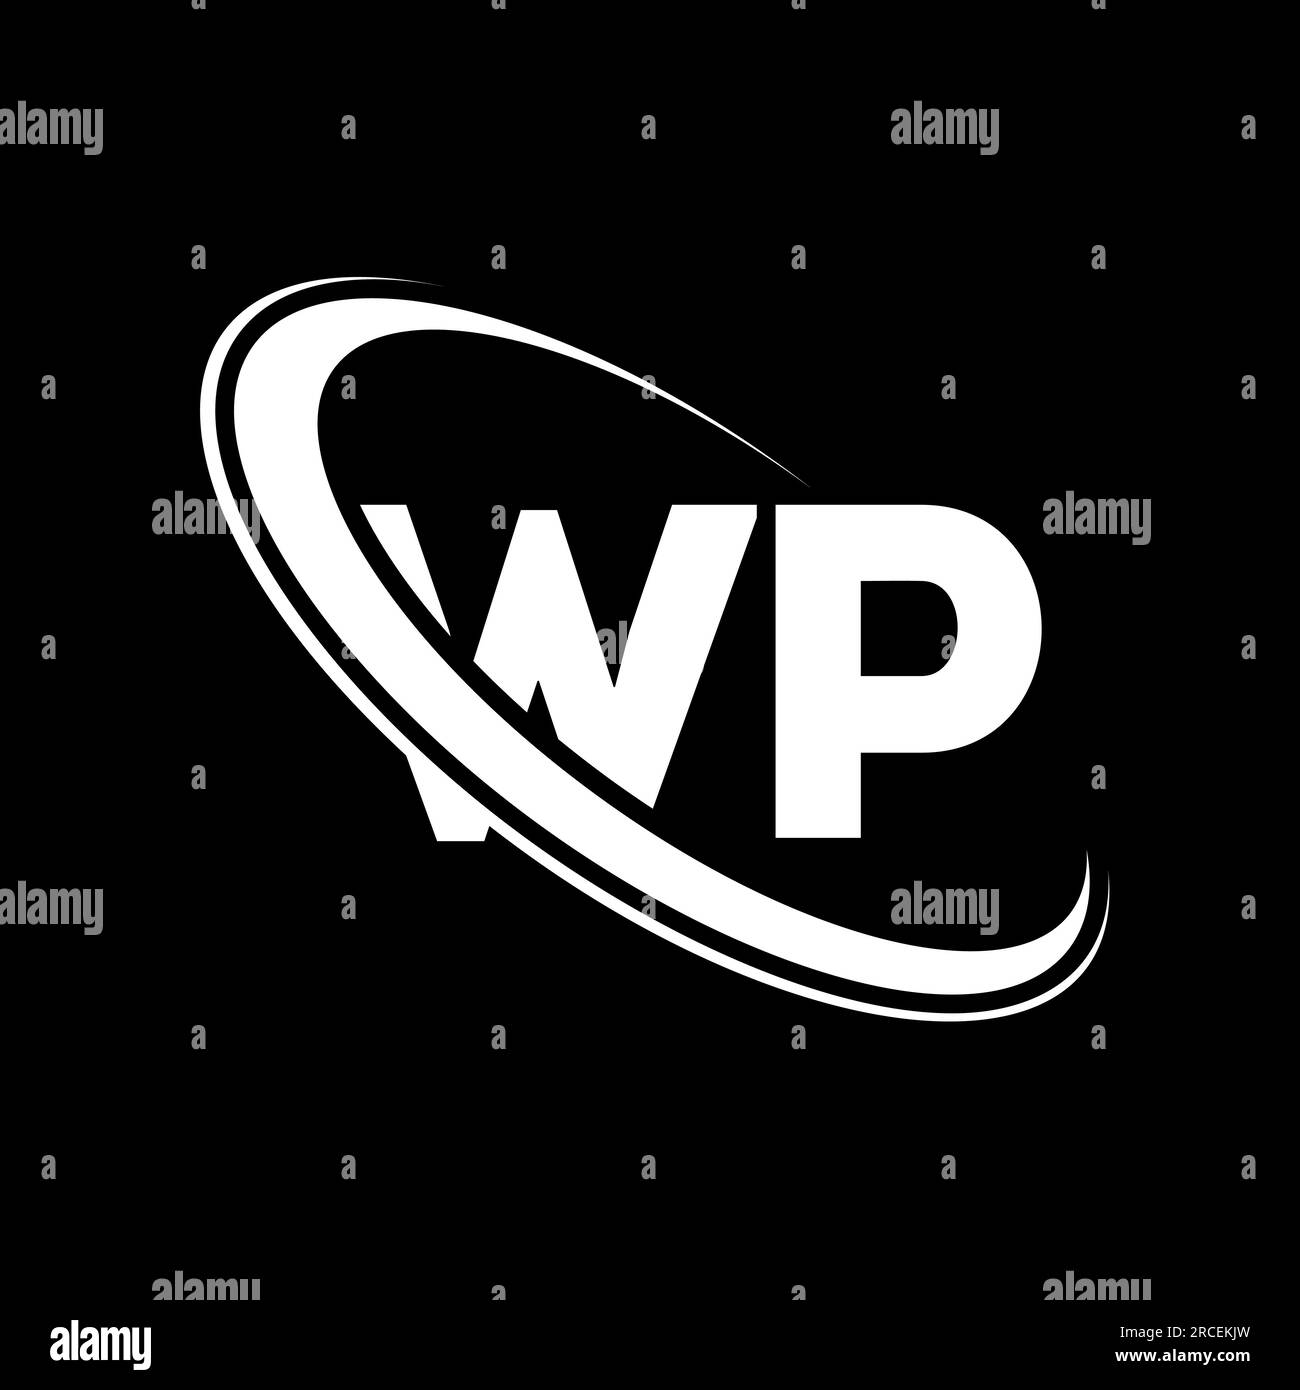 Logo WP. Design W P. Lettera WP bianca. Logo WP/W P Letter. Lettera iniziale WP Linked Circle logo monogramma maiuscolo. Illustrazione Vettoriale